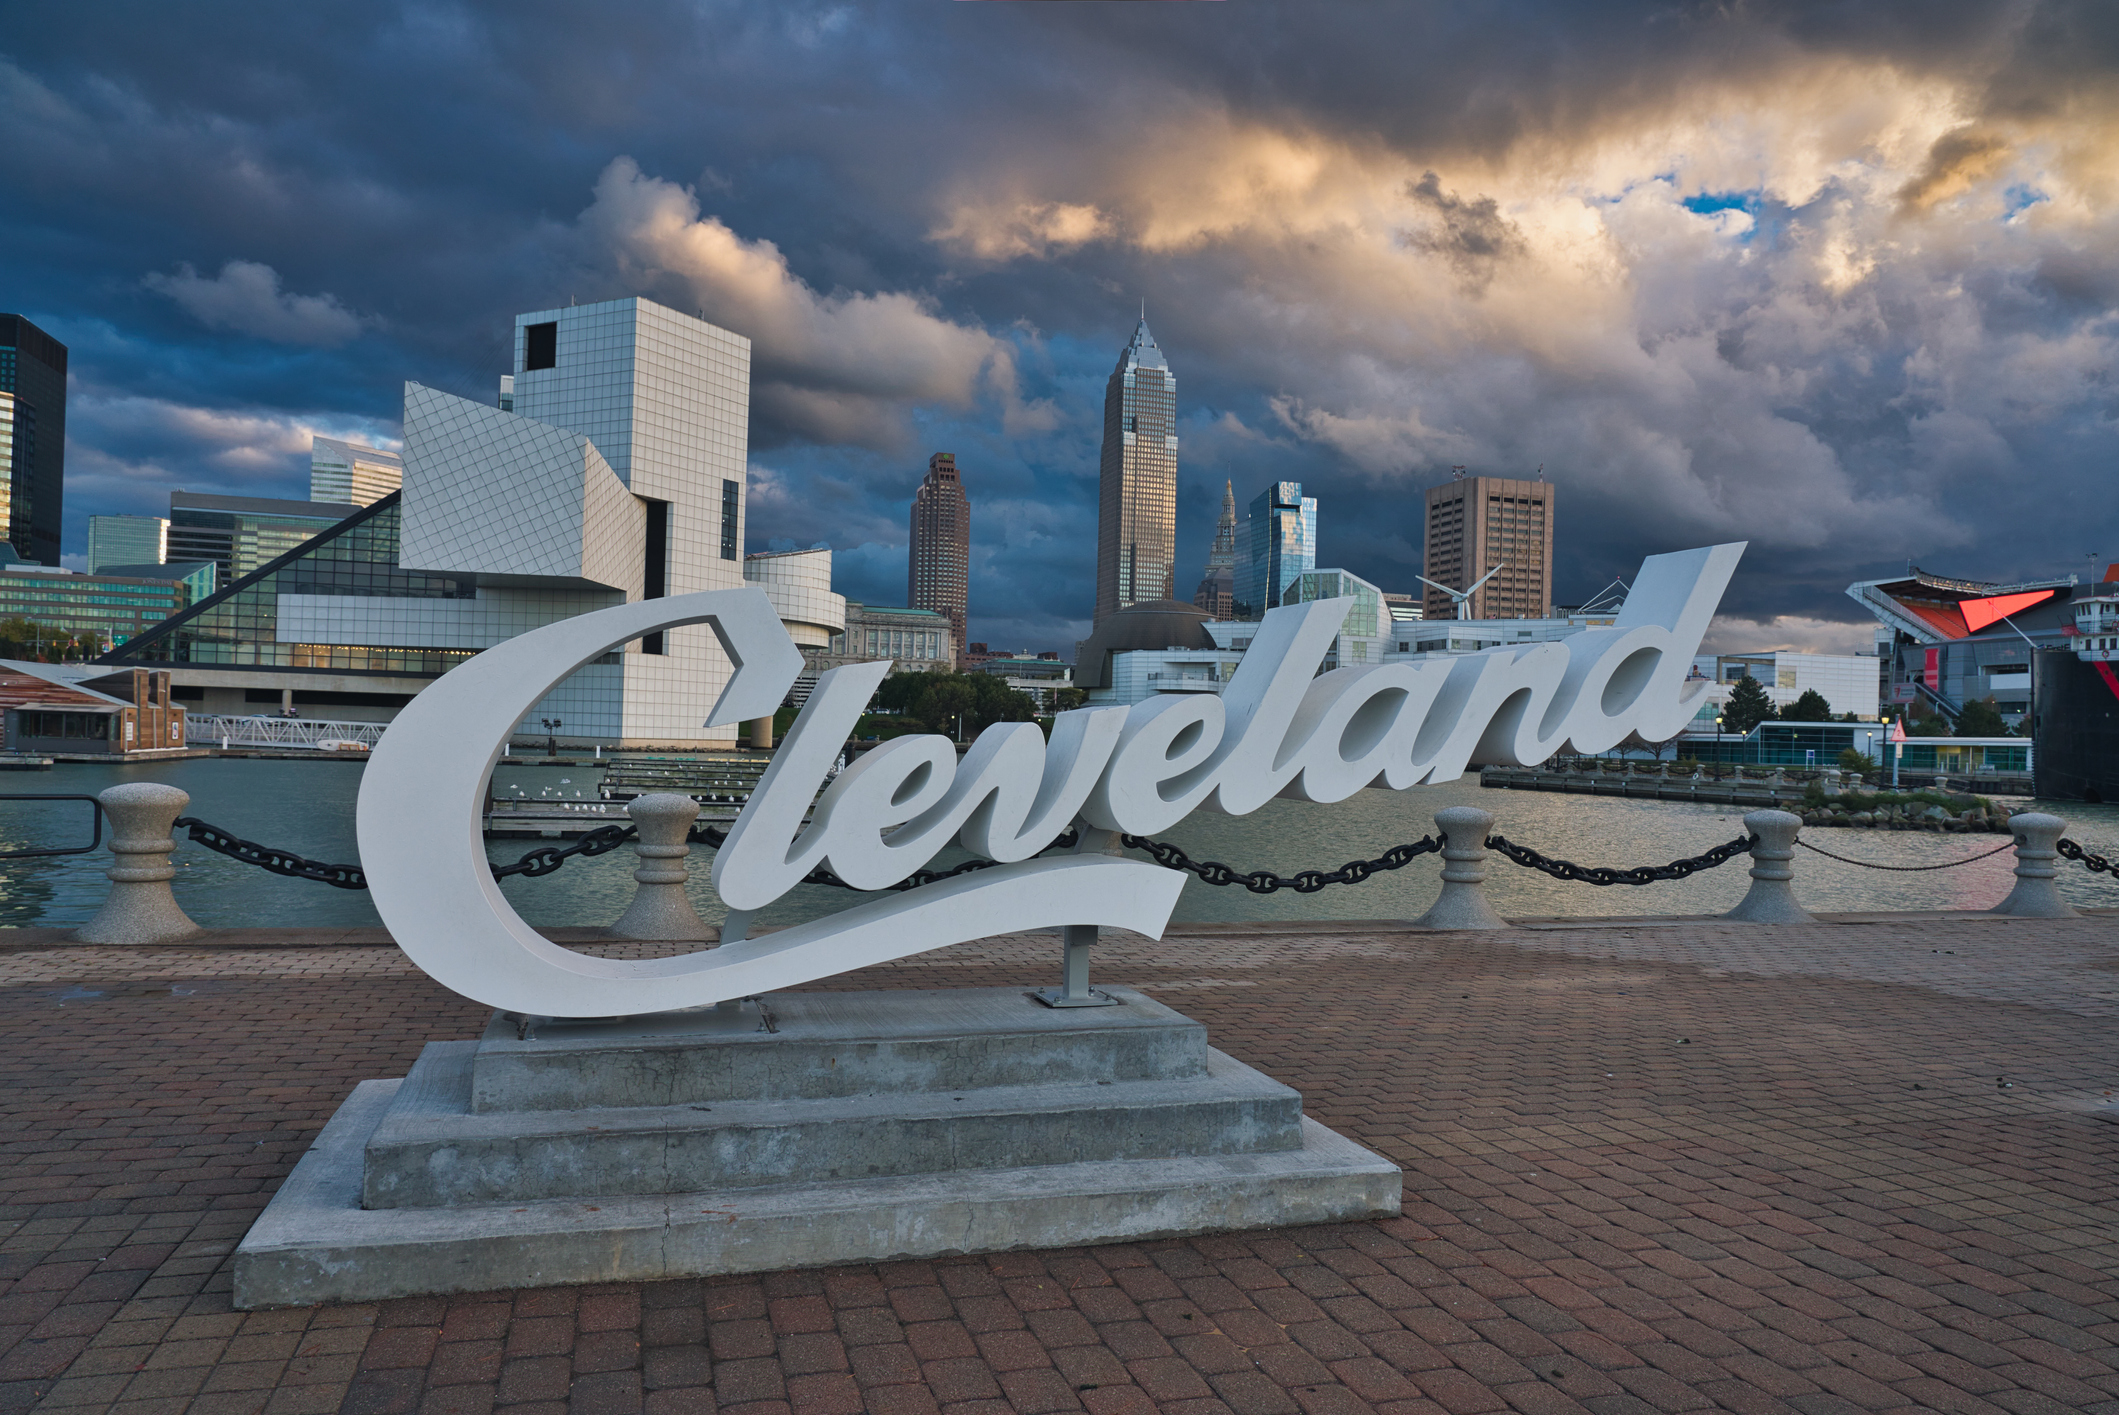 10. Cleveland, Ohio